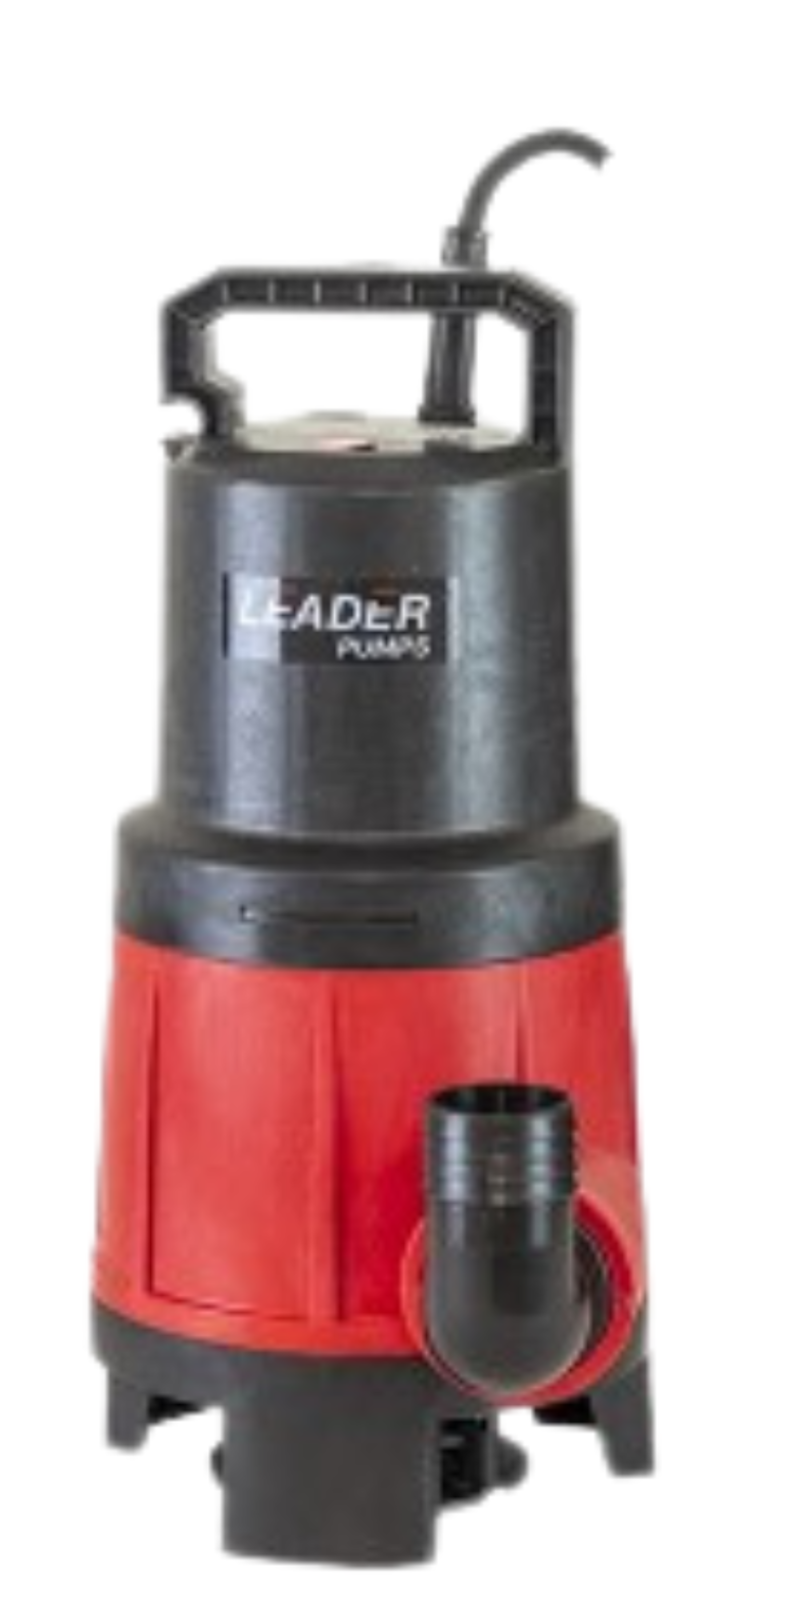 Dompelpomp met vlotter Ecovort 520A | Leader Pumps